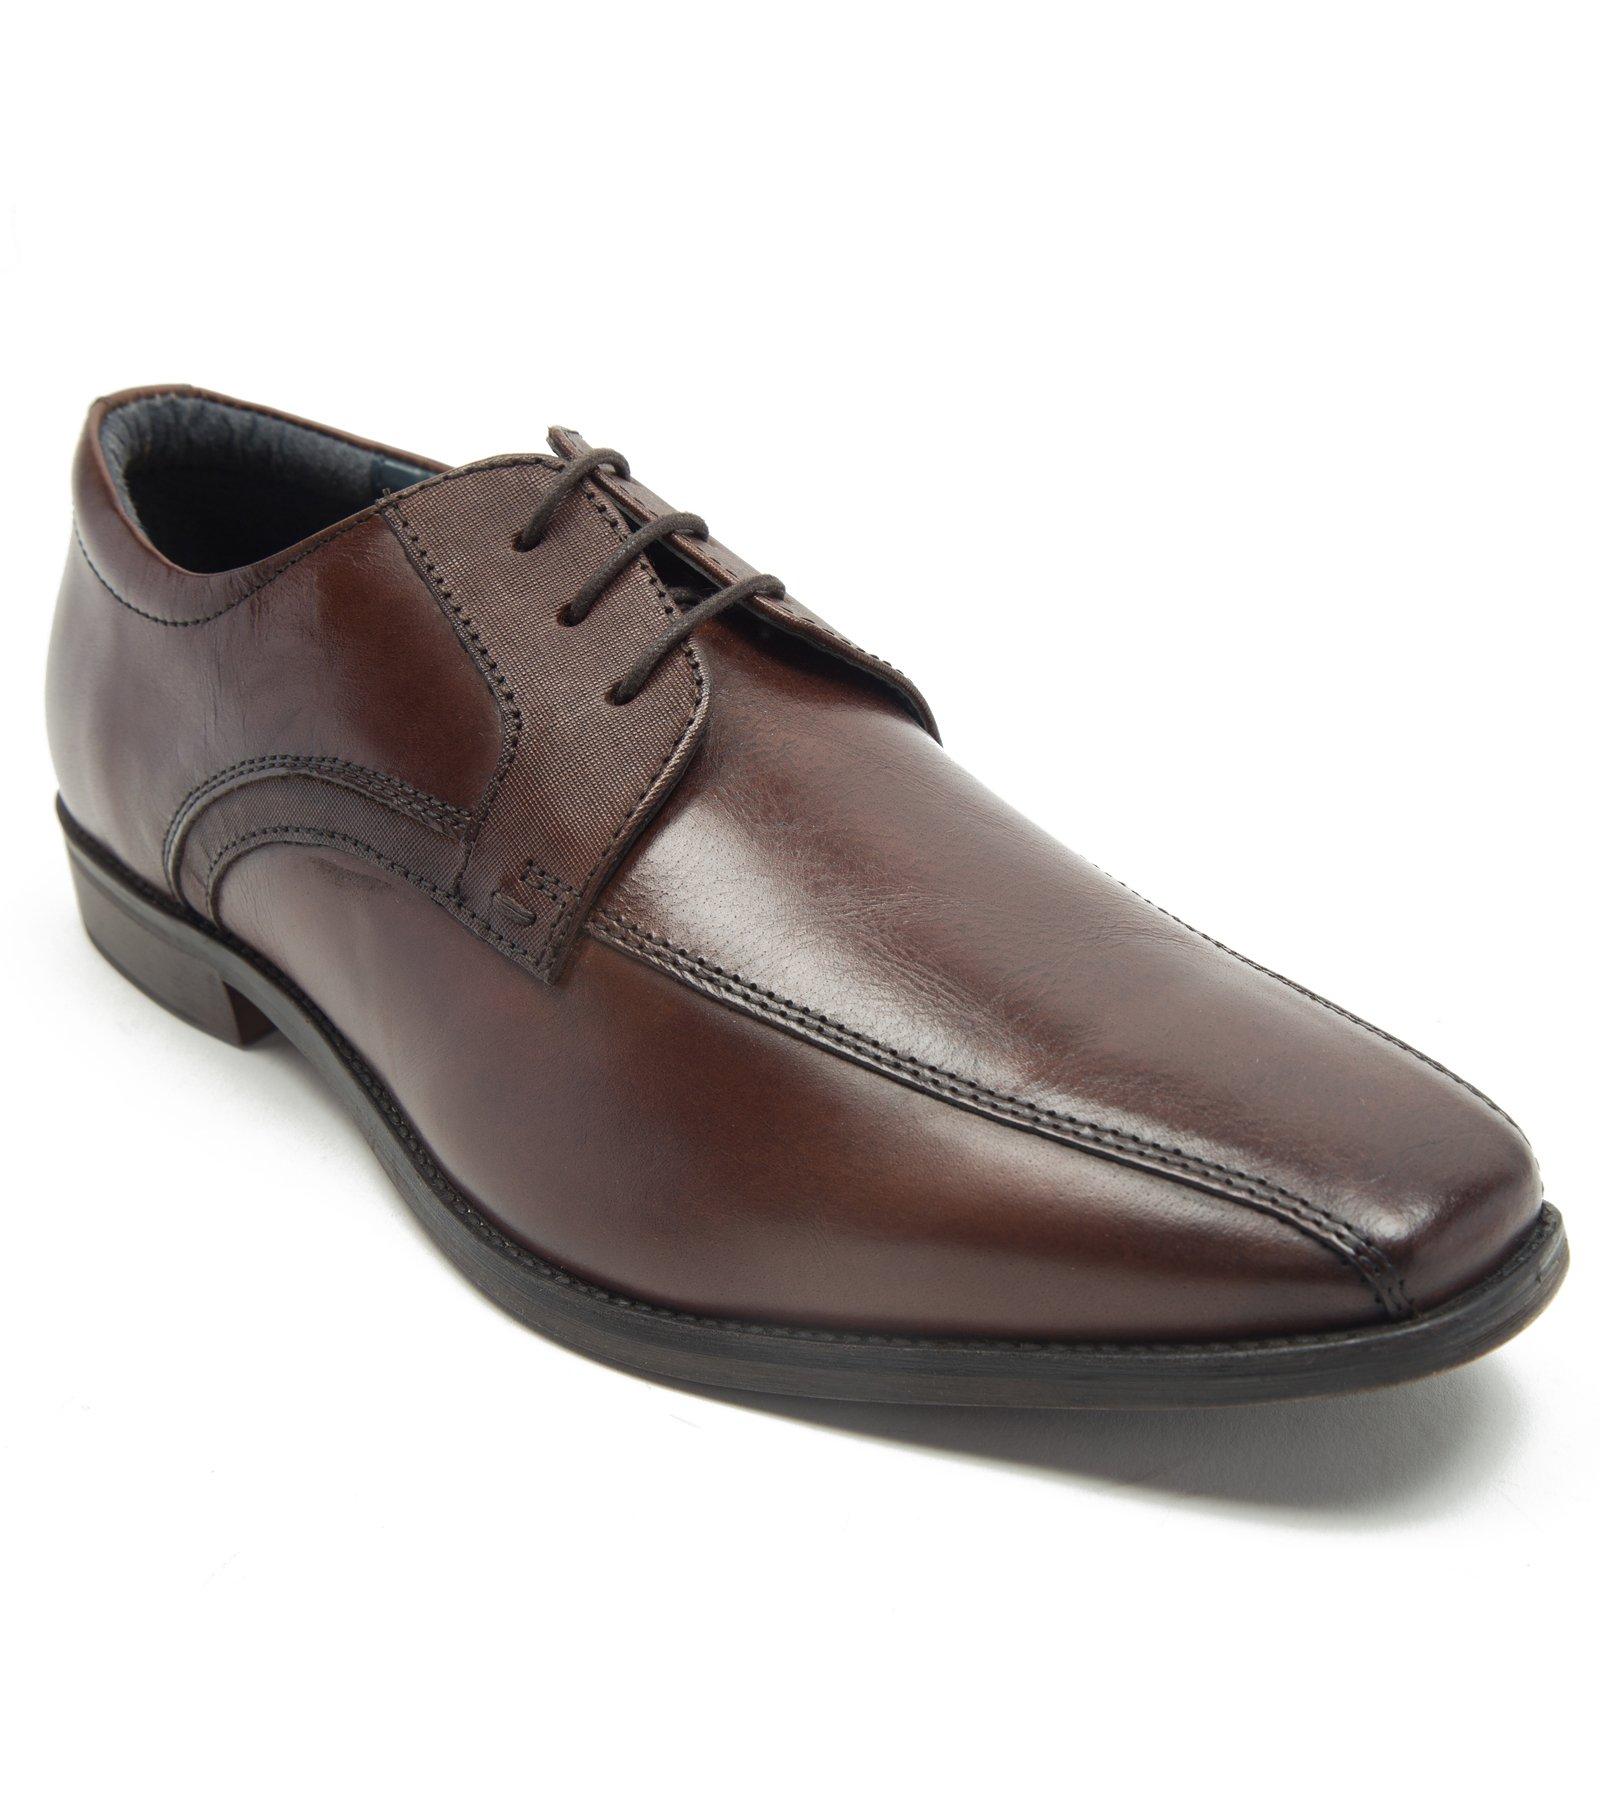 Официальные туфли 'Hutton' Кожаные туфли дерби премиум-класса Thomas Crick, коричневый